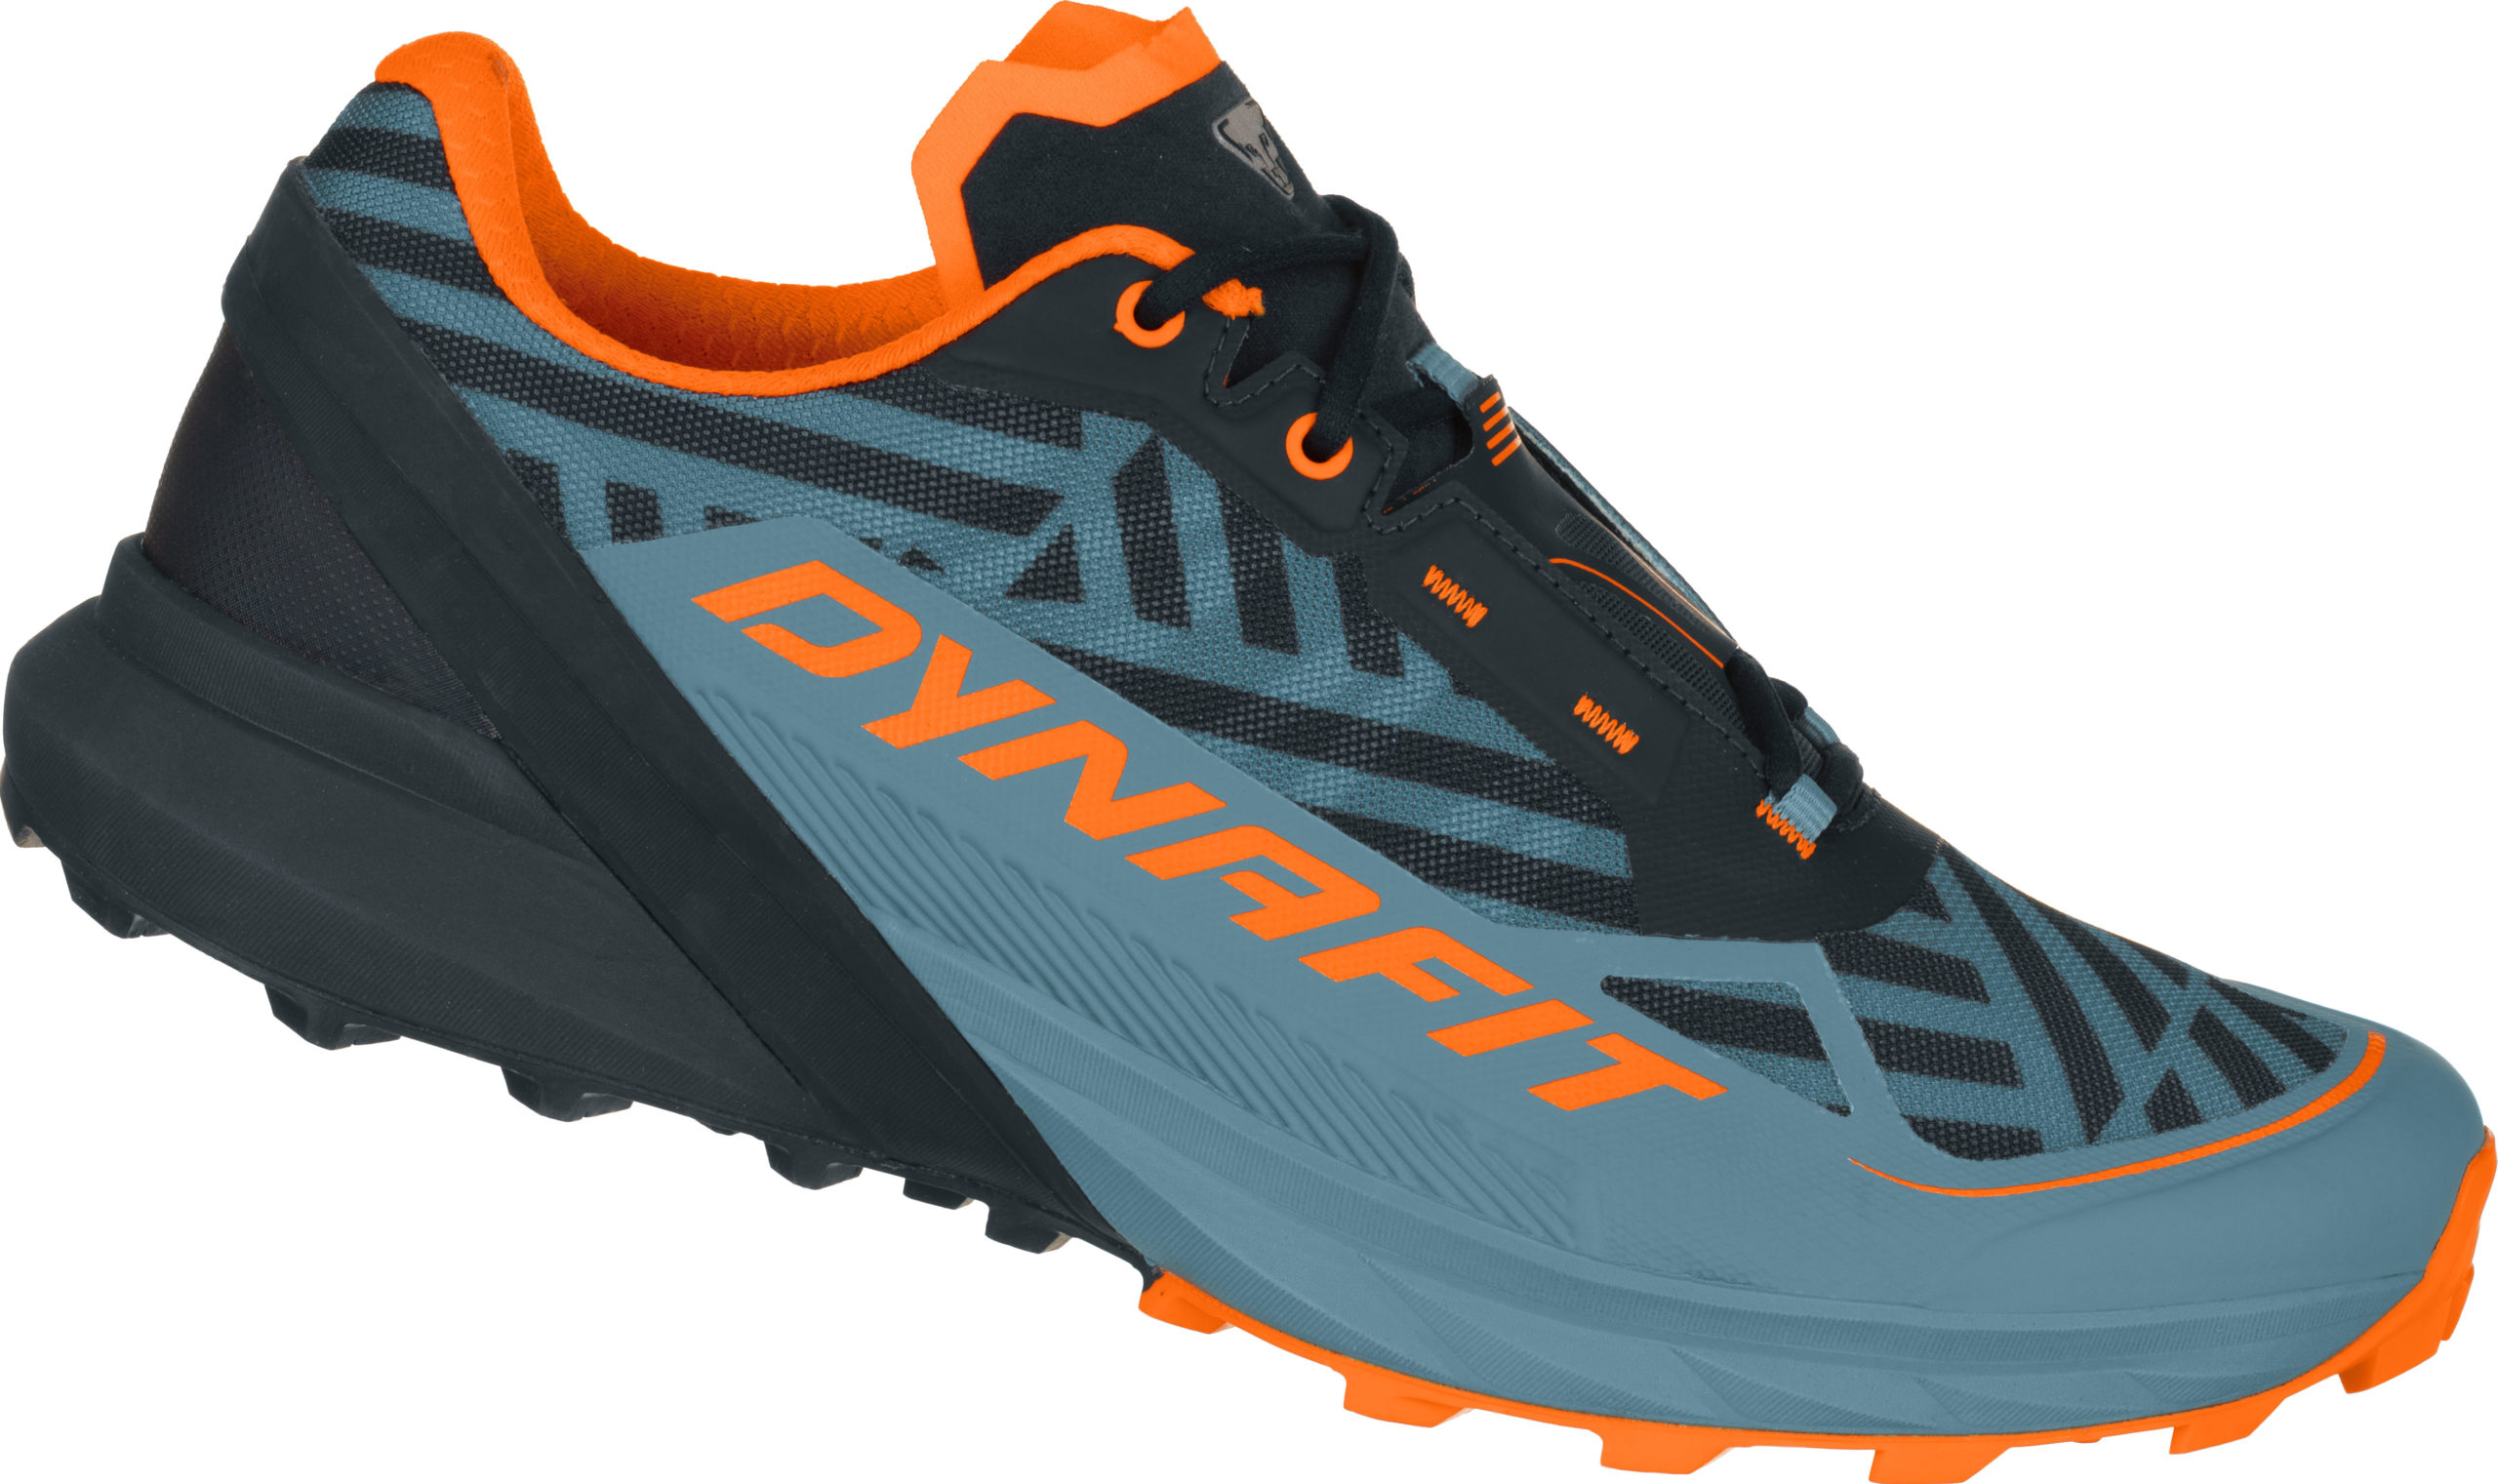 Razzle dazzle – designerska linia marki DYNAFIT dla biegaczy trailowych